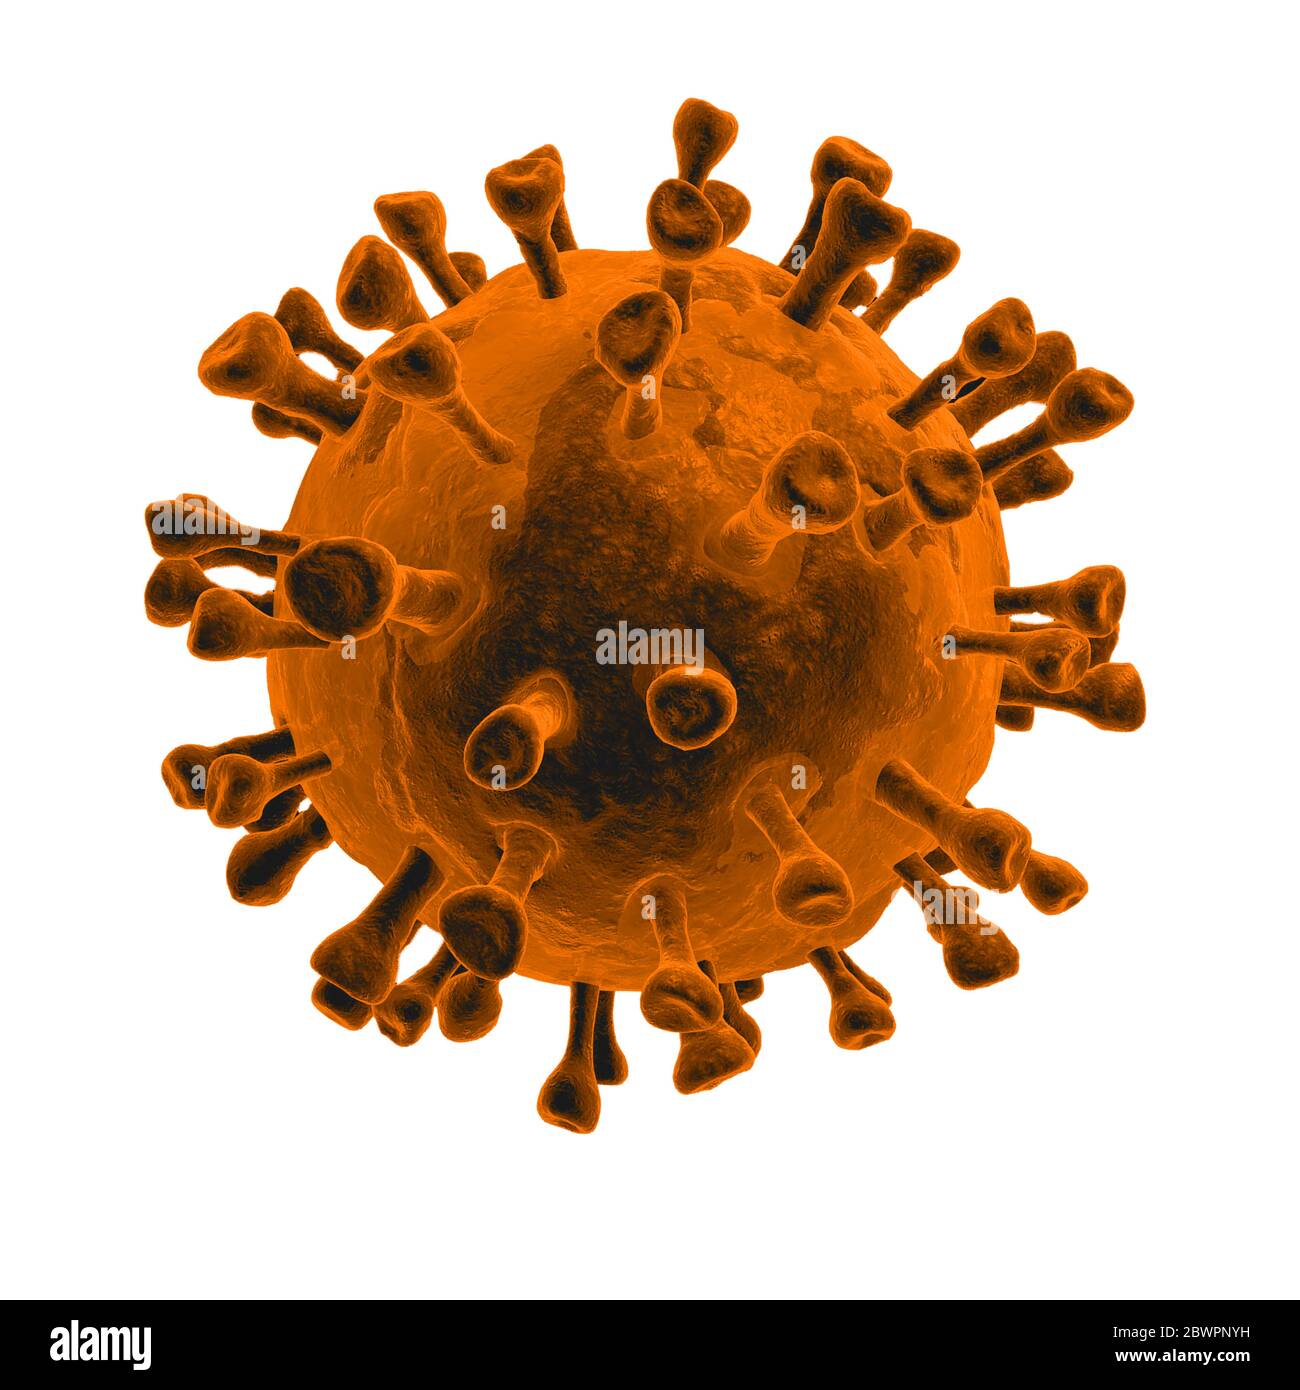 2019 nCov-Corona virus focolaio e coronavirus influenza bianco fondo concetto pericoloso influenza colpo Covid -19 pandemia di salute medica rischio wi Foto Stock